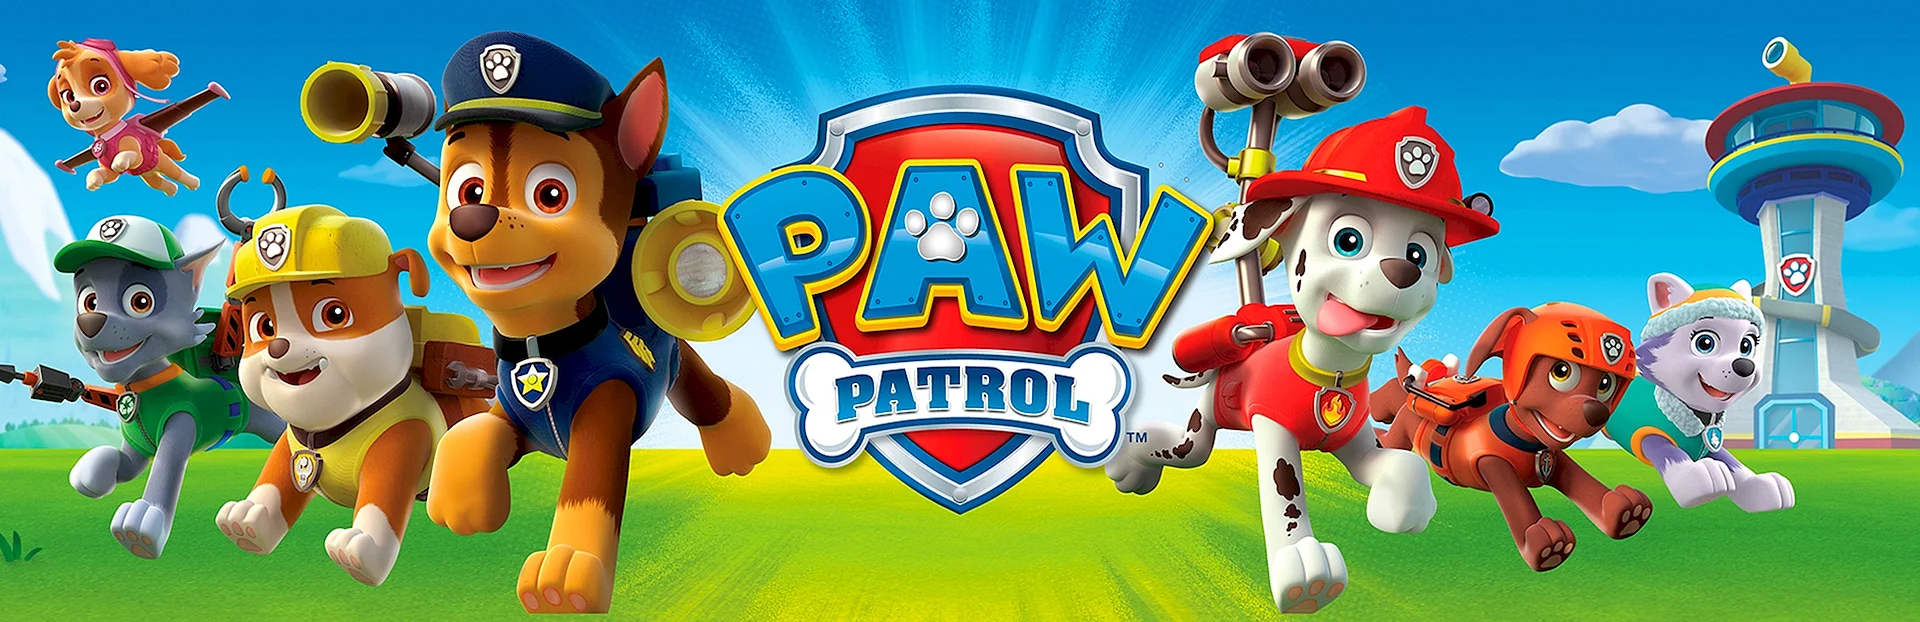 Paw Patrol Patrulla Canina Wallpaper